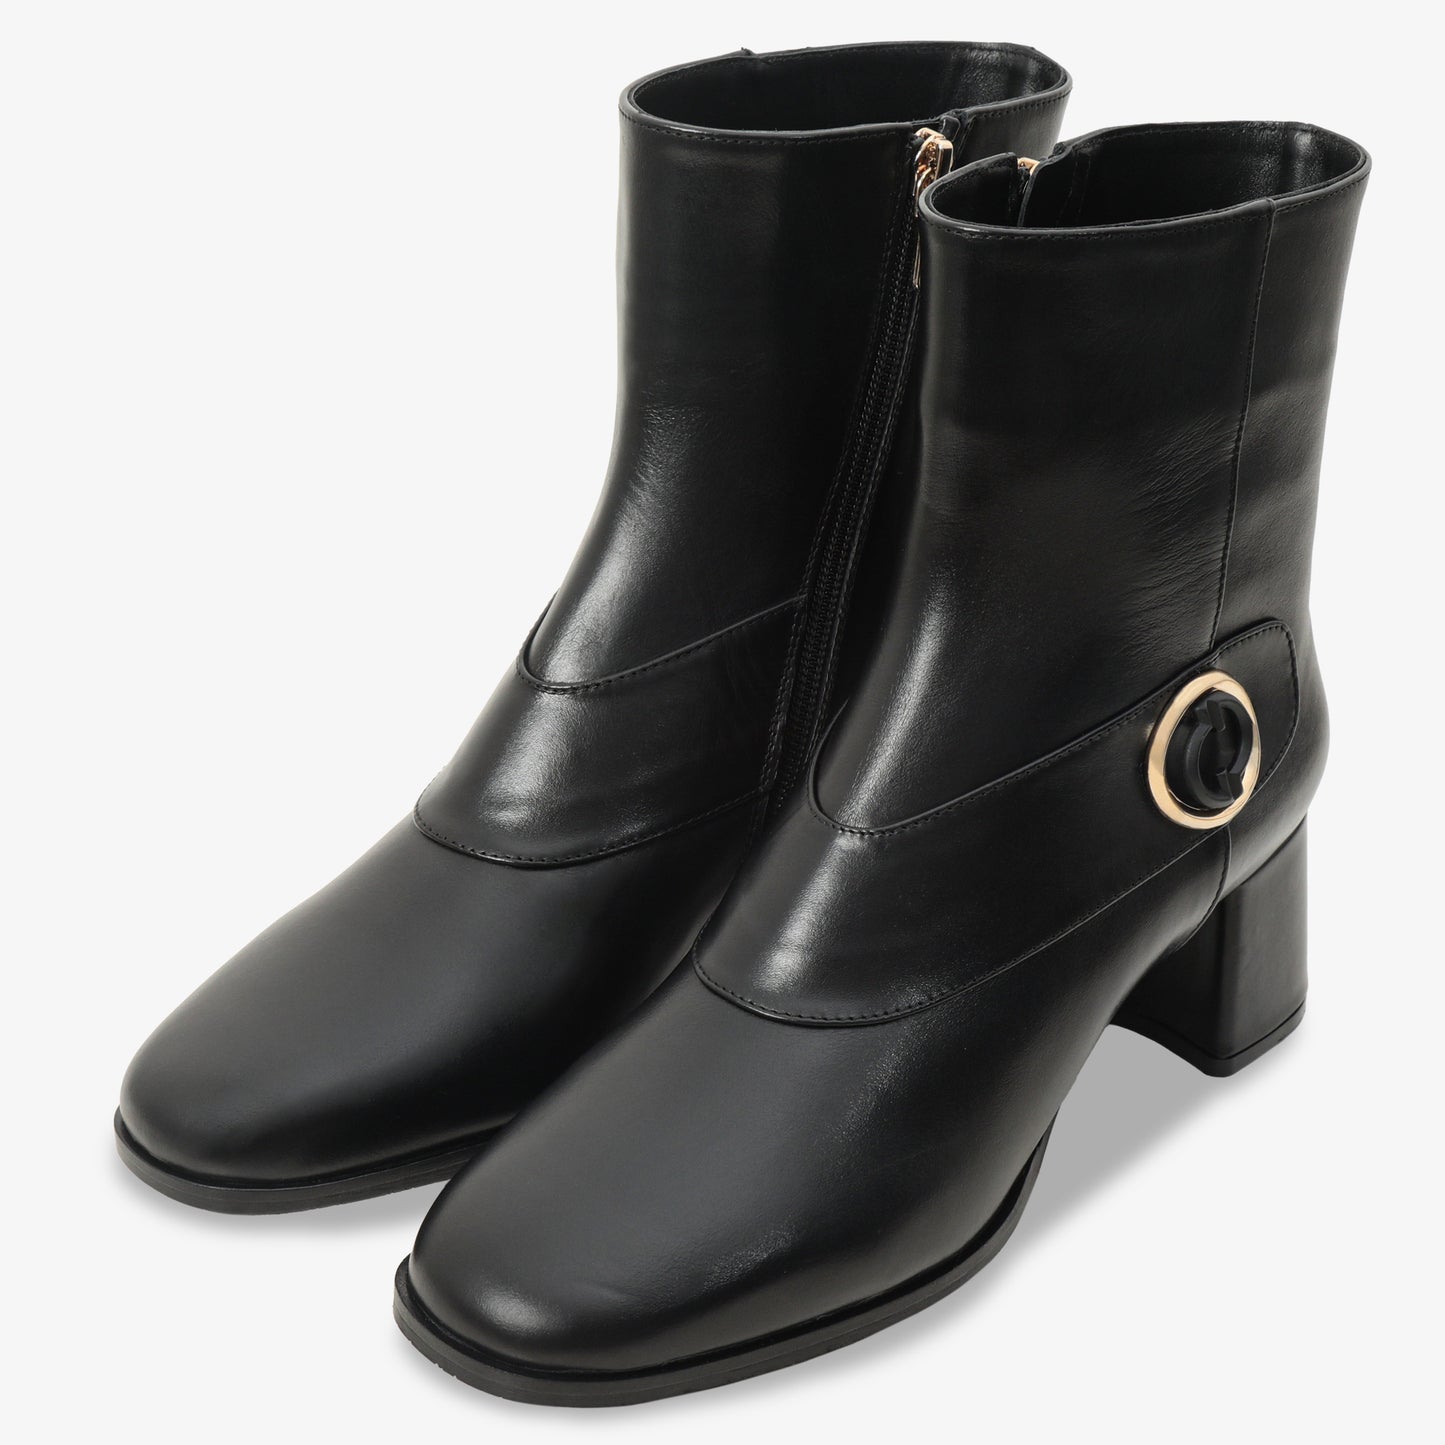 The Windsor Black Leather Block Heel Women Boot